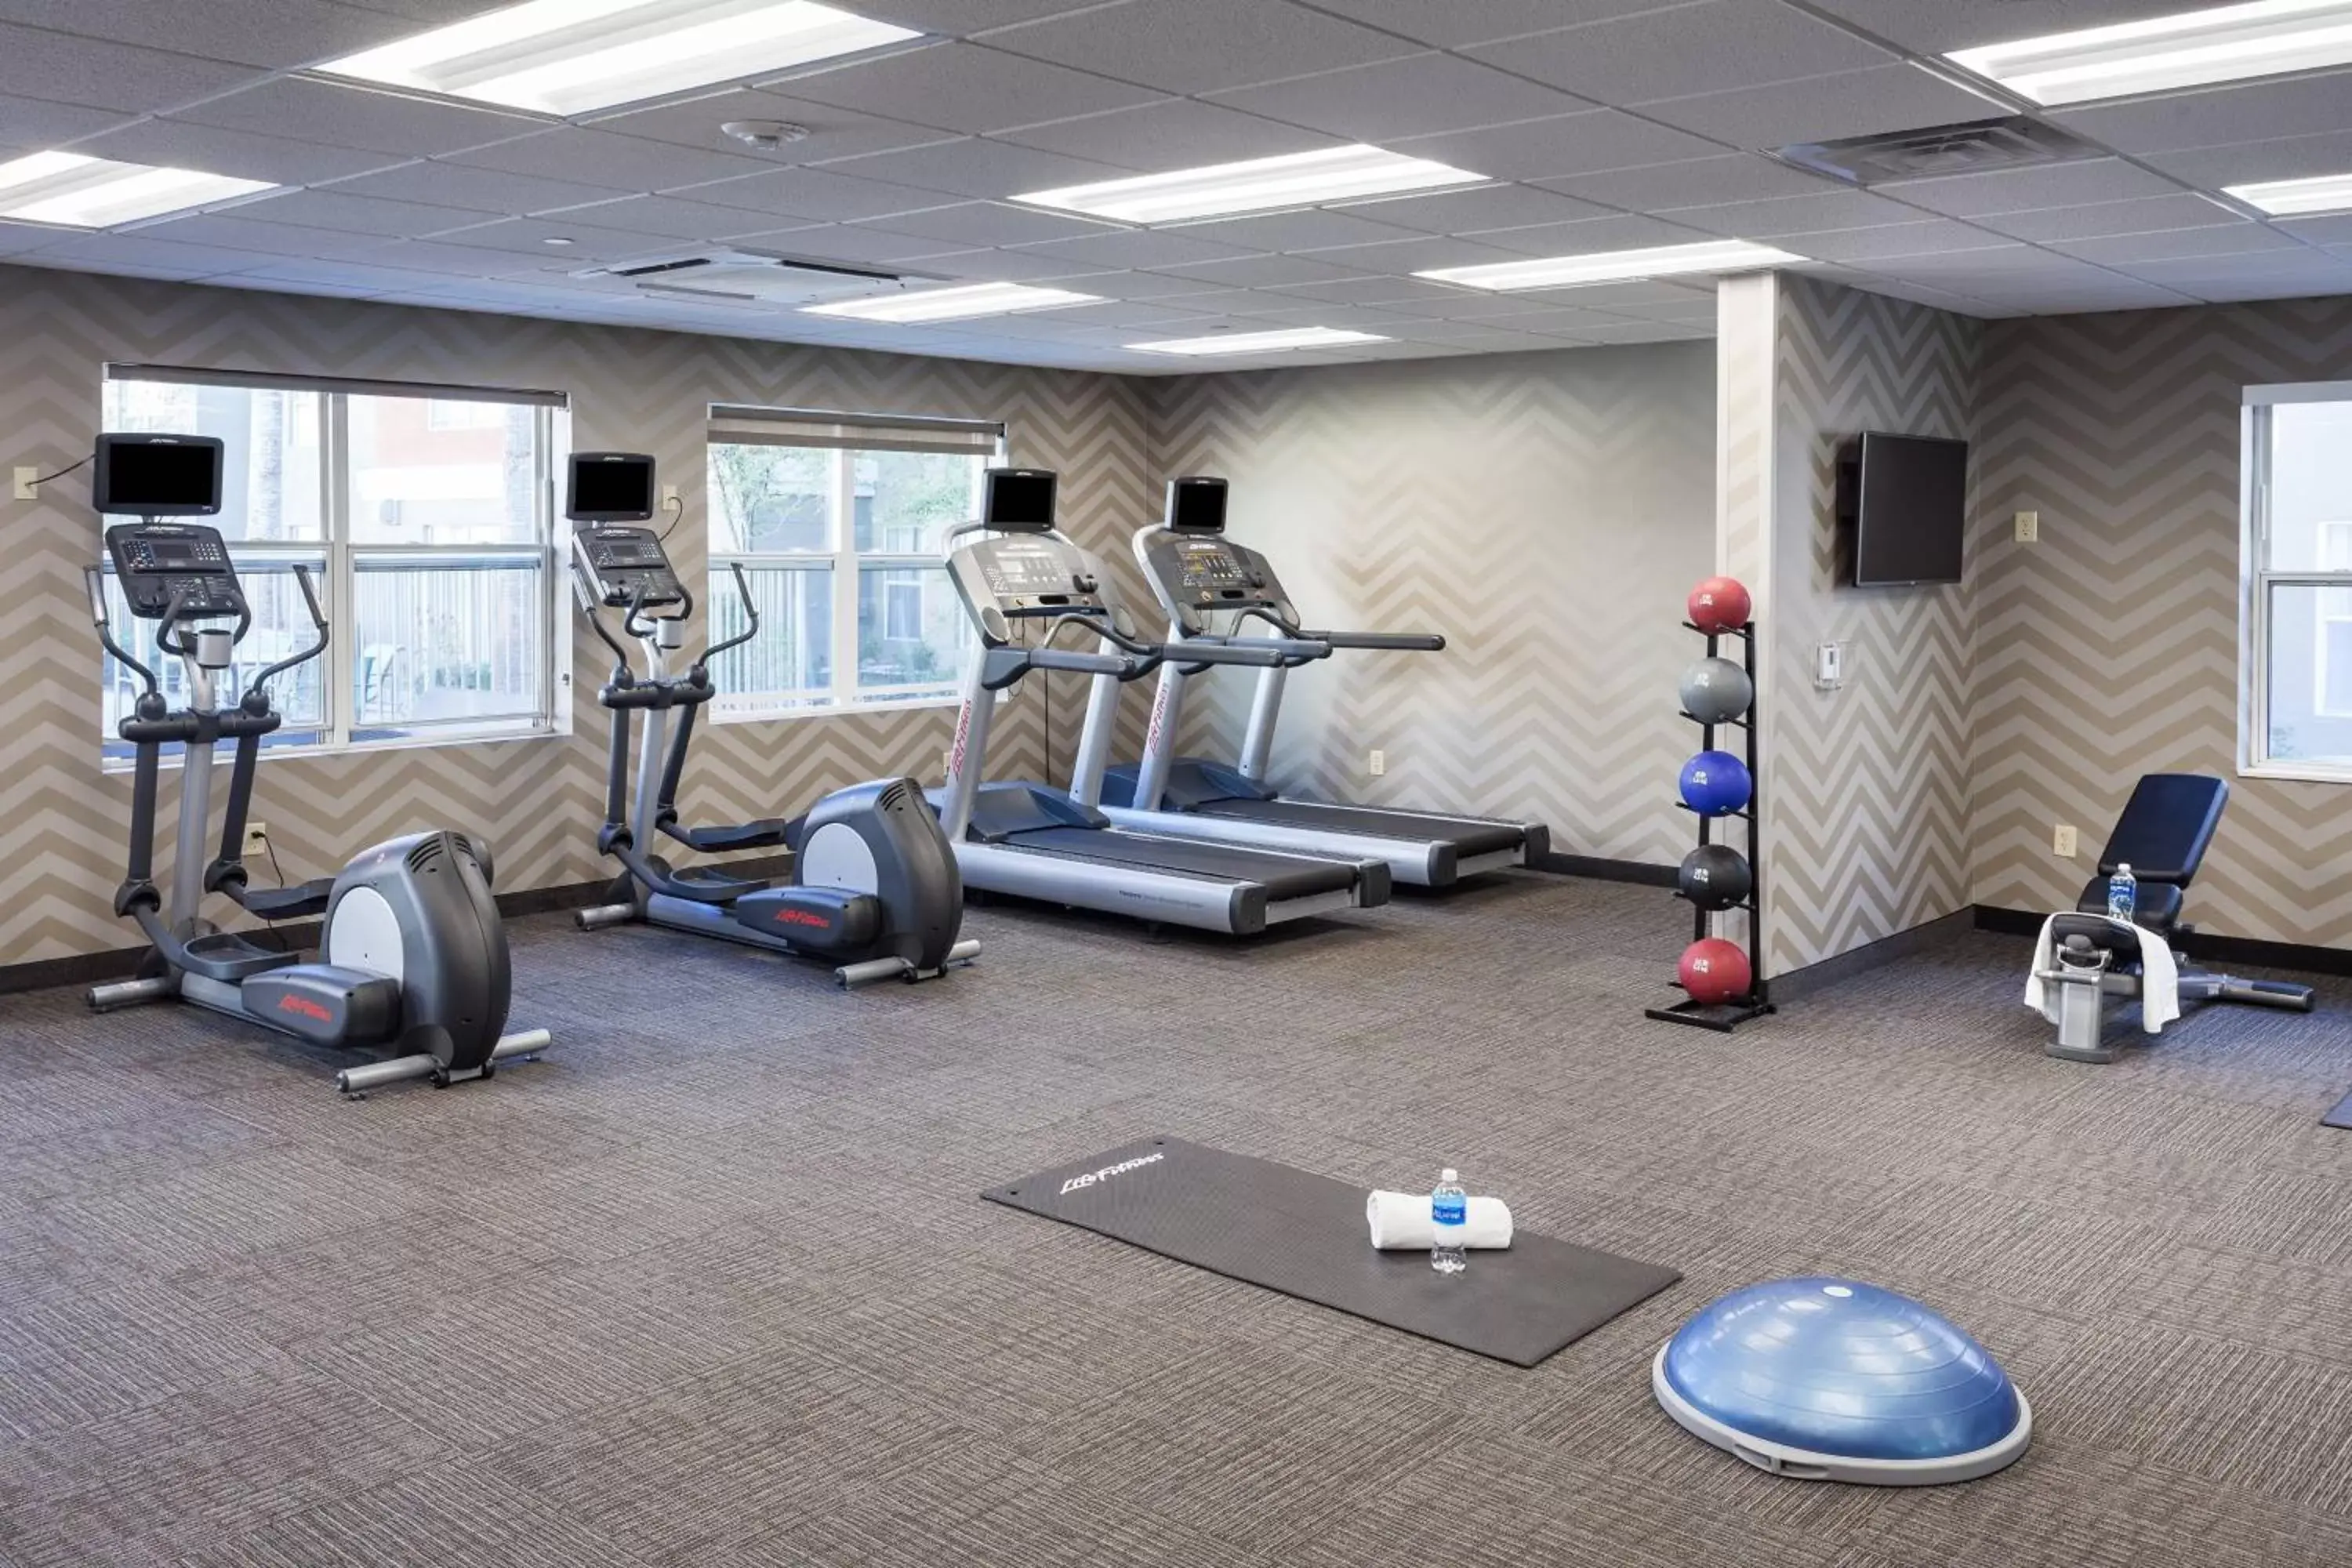 Fitness centre/facilities, Fitness Center/Facilities in Residence Inn by Marriott Las Vegas Henderson/Green Valley